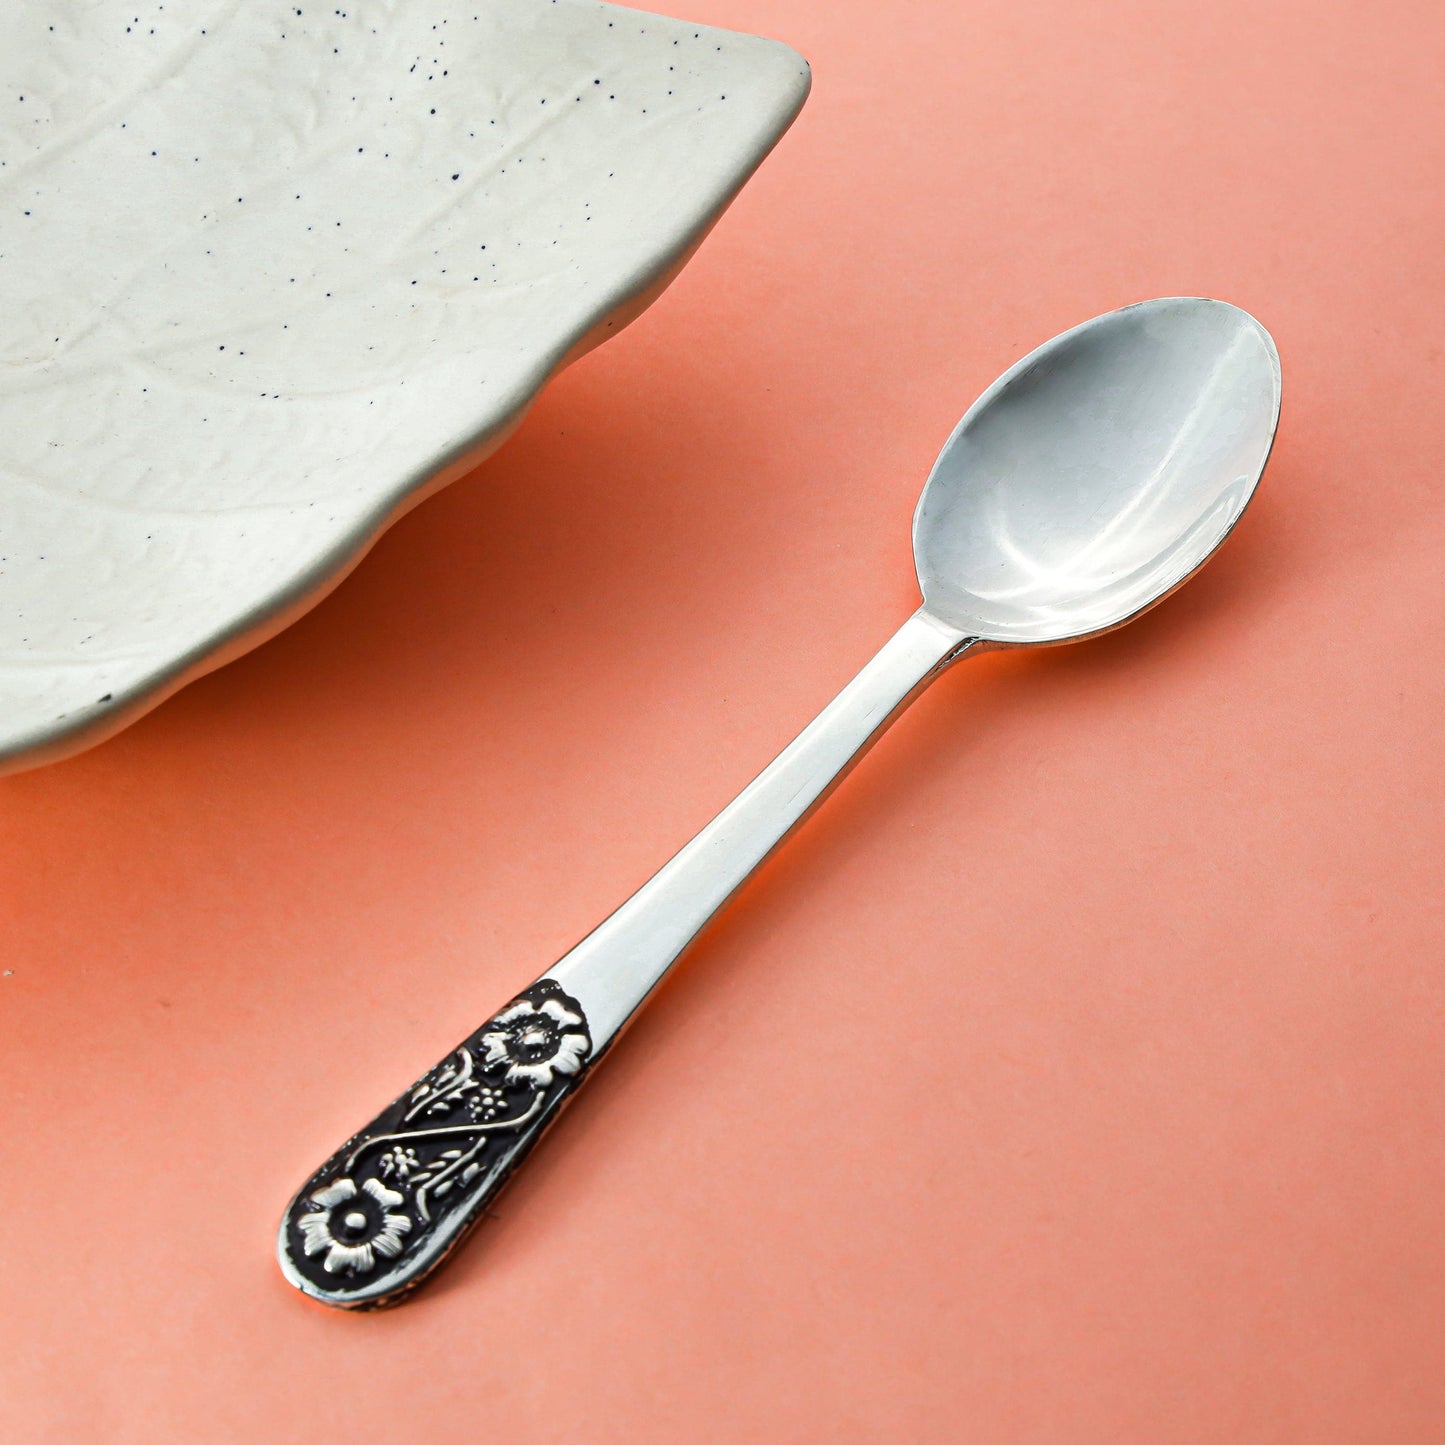 Antique Silver Spoon